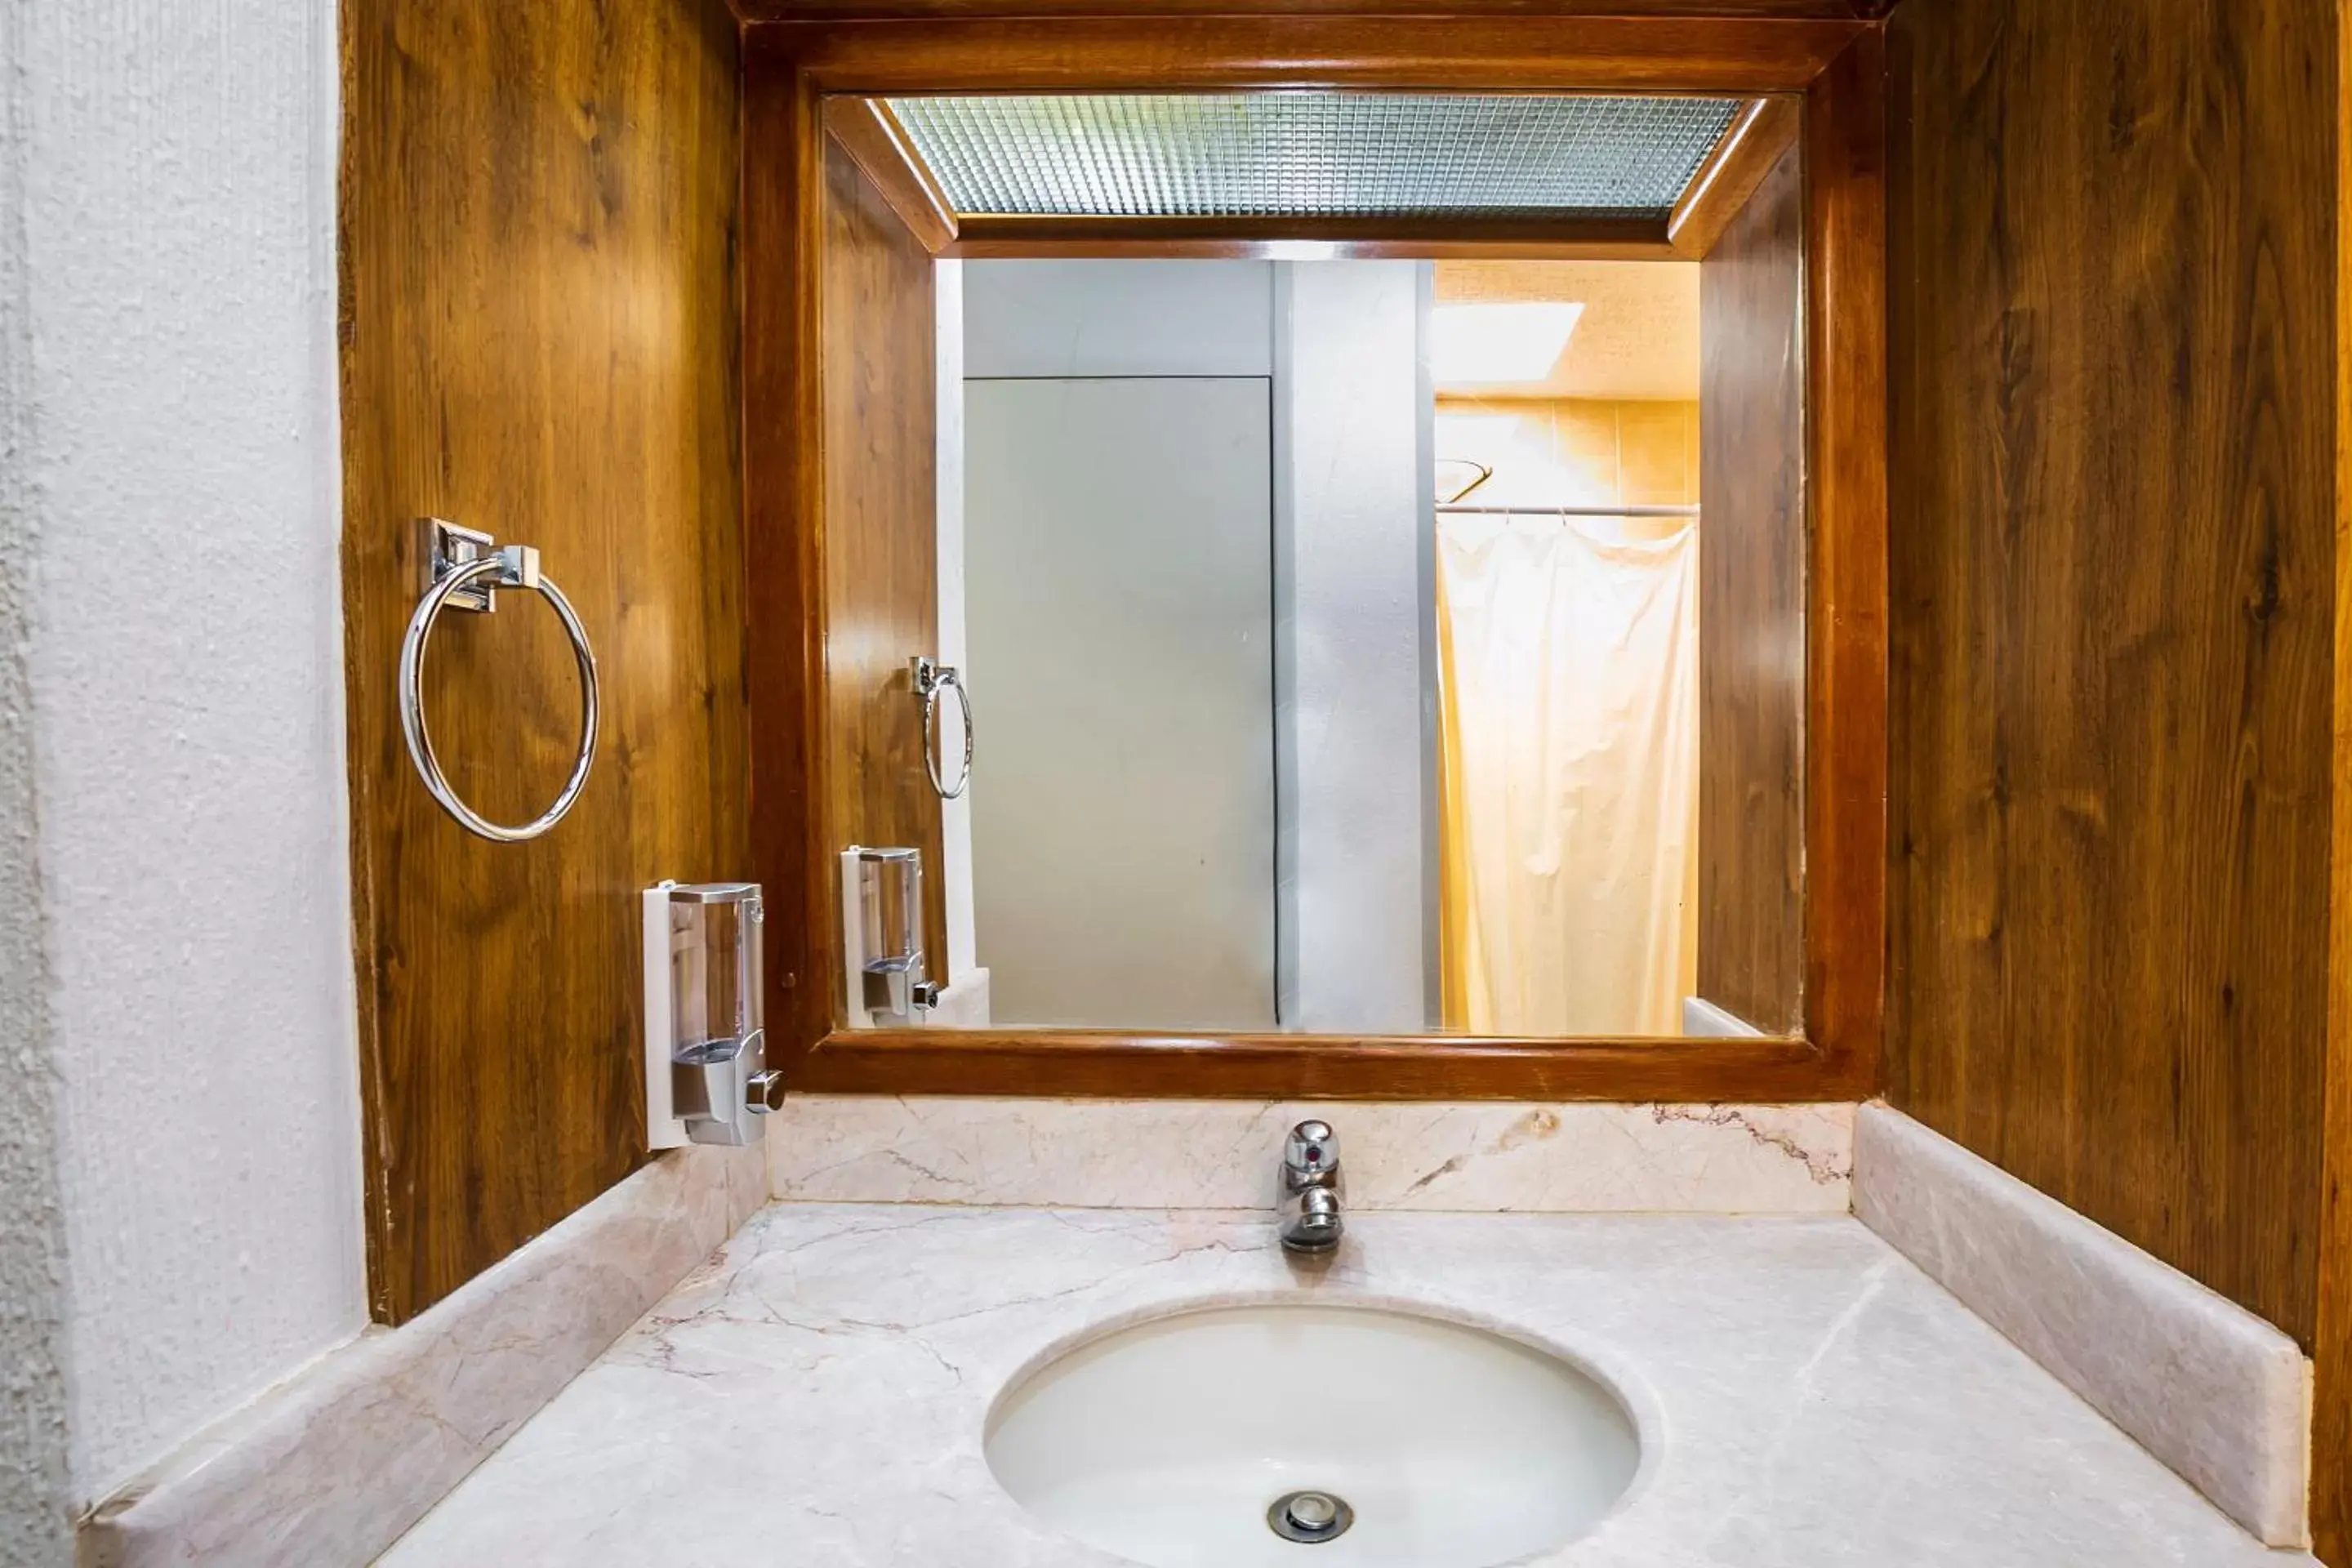 Area and facilities, Bathroom in Capital O Hotel Casa Blanca, Morelia